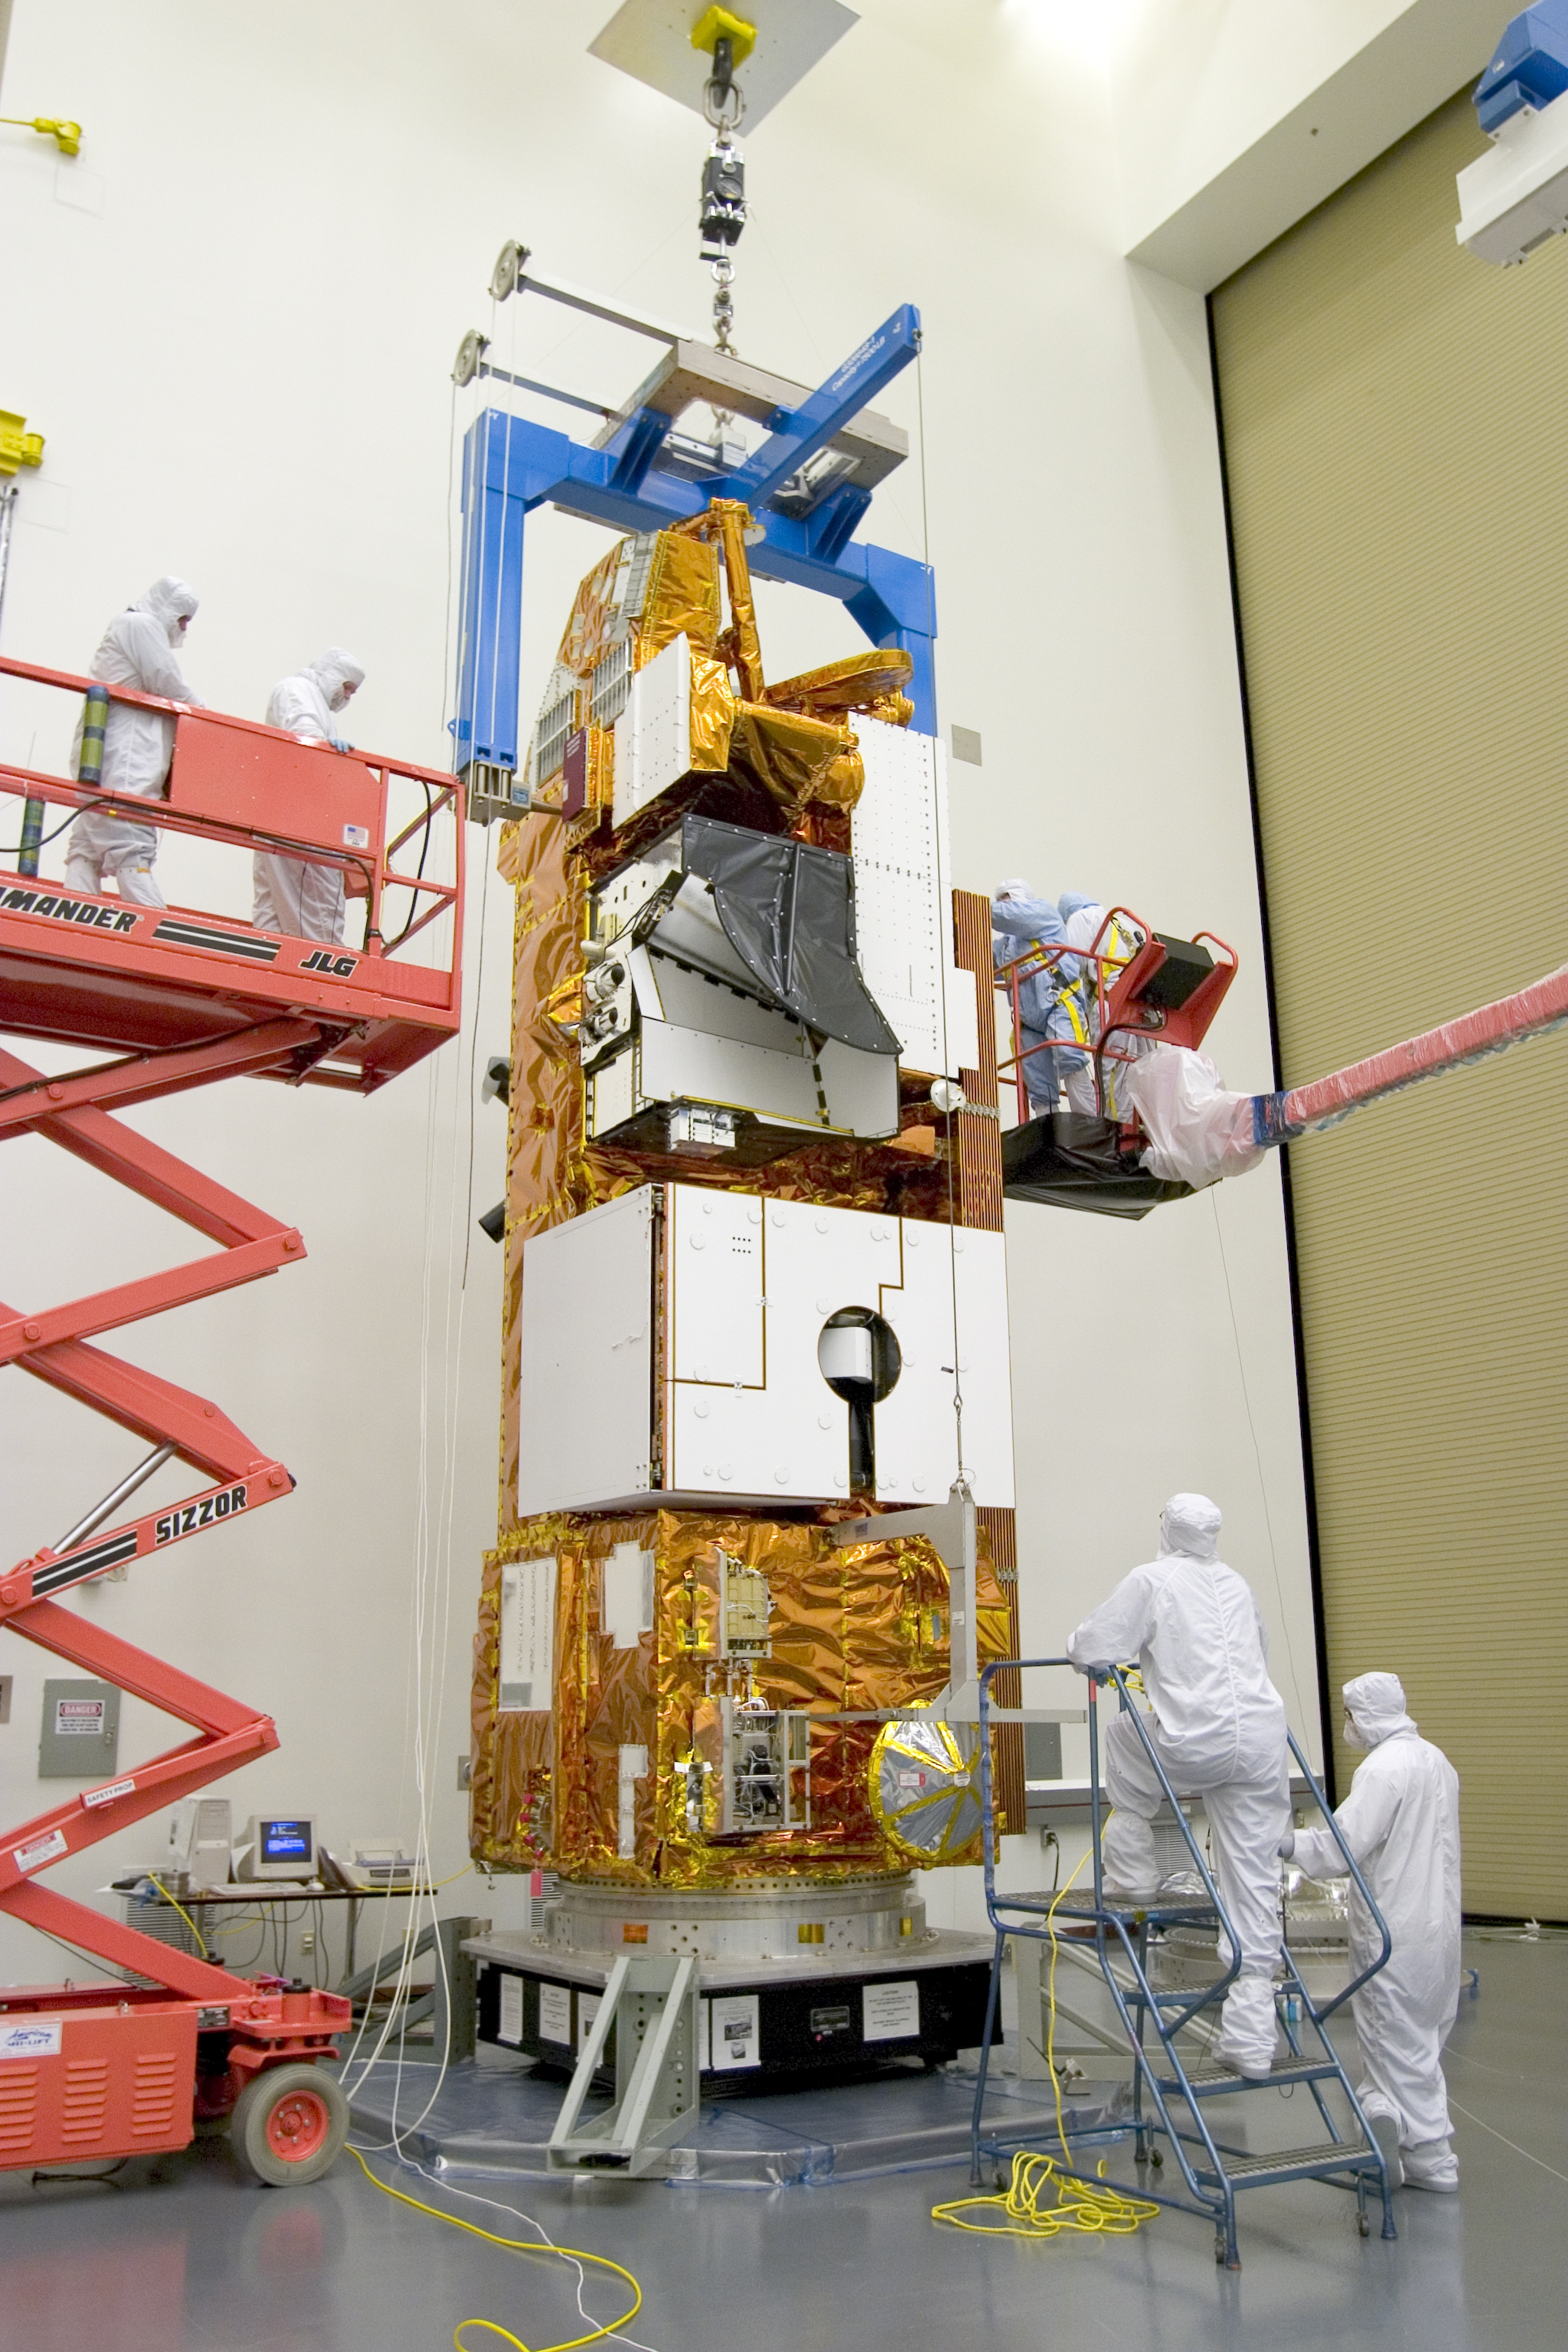 The Aura spacecraft is shown